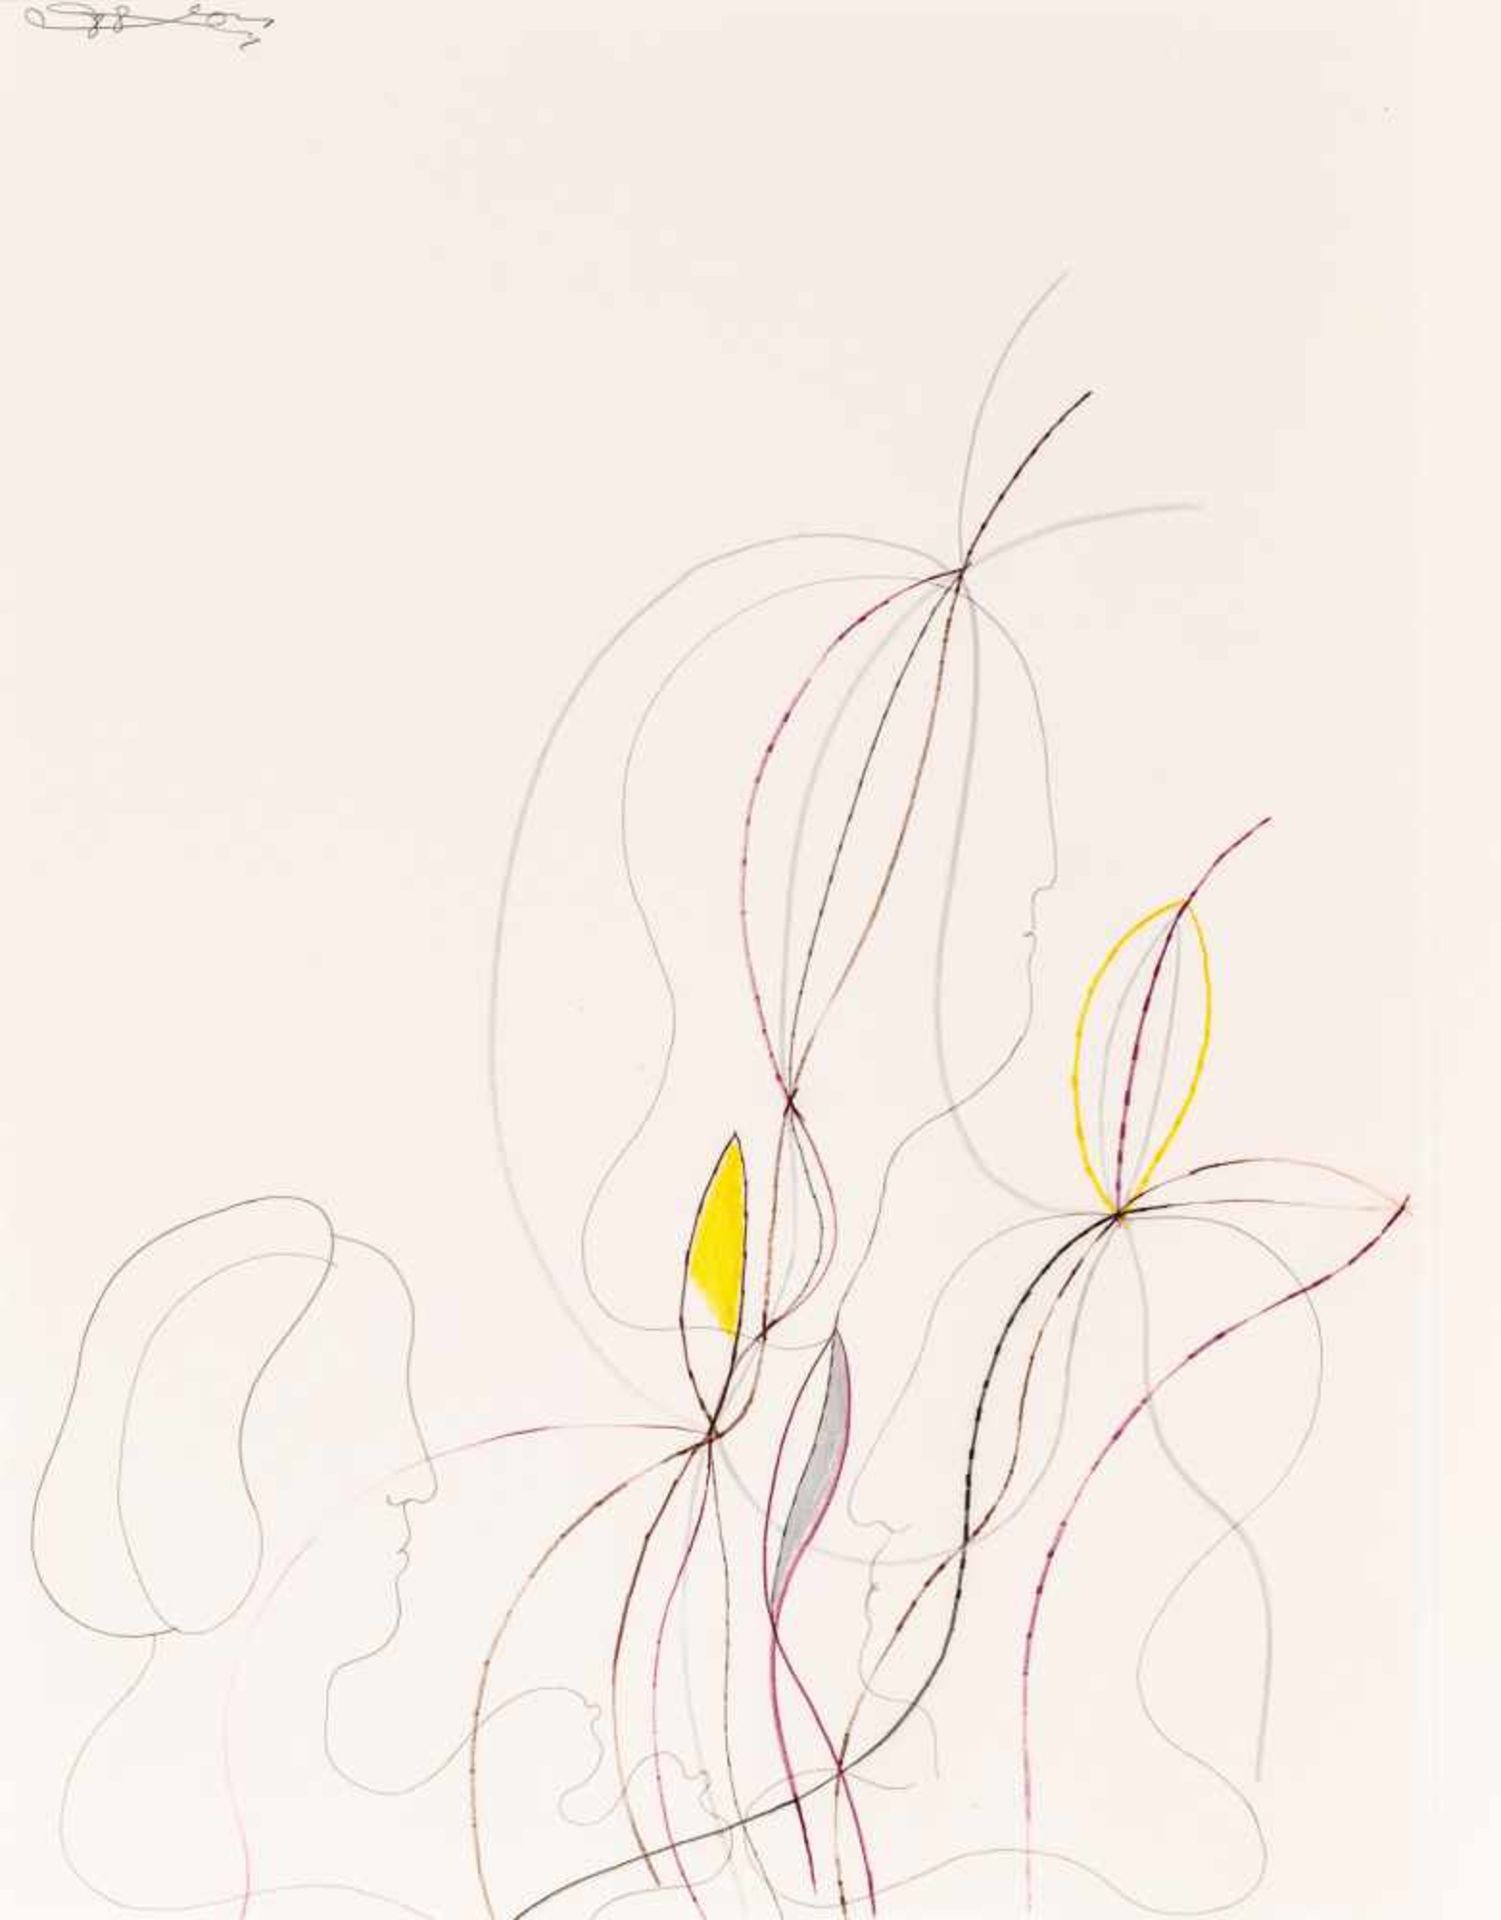 Oswald Oberhuber Meran 1931 * Ohne Titel / untitled Ölkreide und Bleistift auf Papier / oil crayon